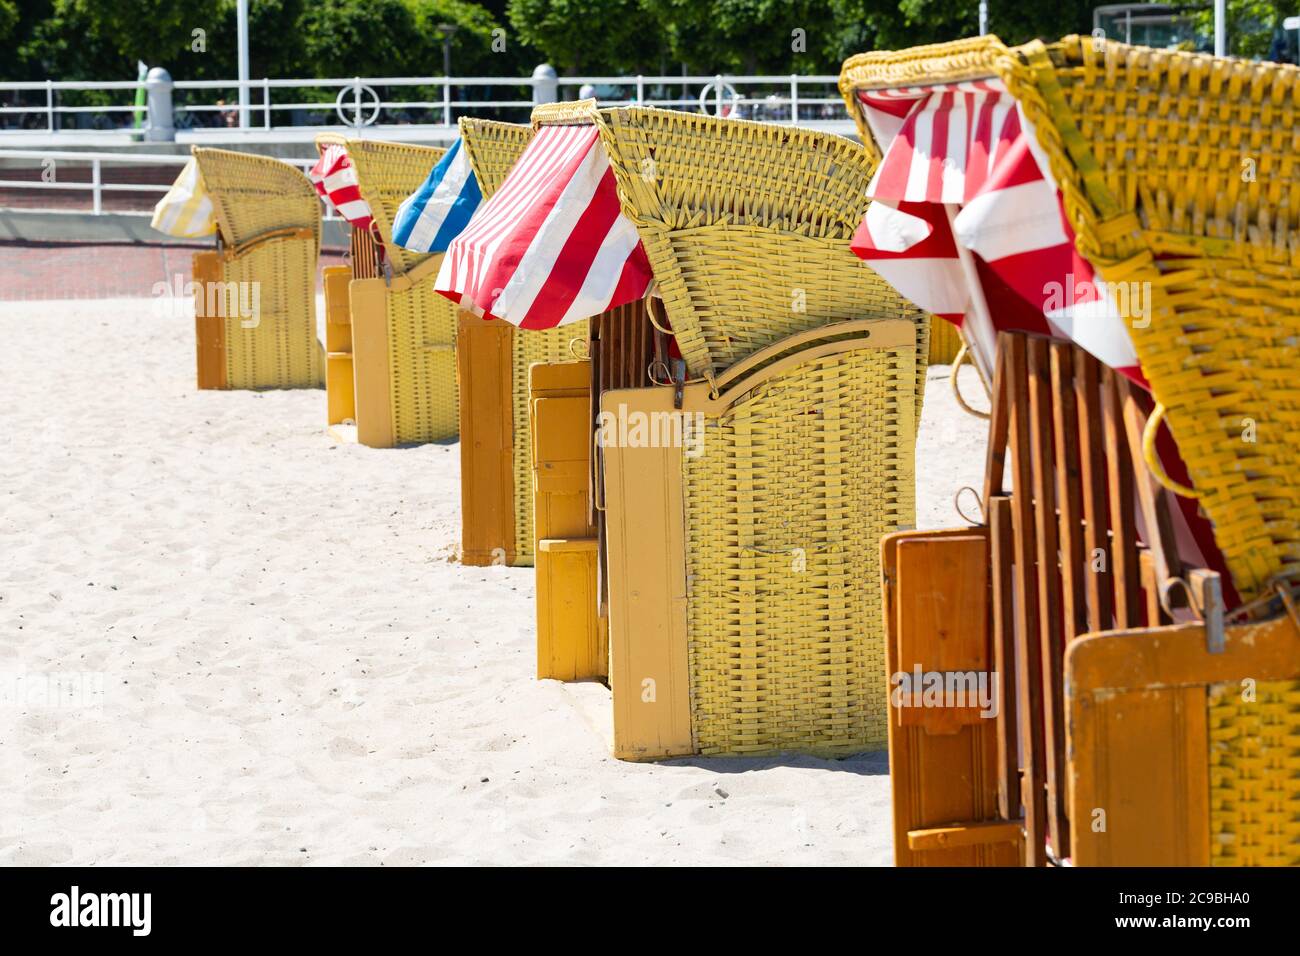 Travemünde, Schleswig-Holstein / Germania - 24 giugno 2020: Sedie da spiaggia in vimini (in tedesco chiamato Strandkorb) sulla spiaggia di Travemünde. Diversi vuoti Foto Stock